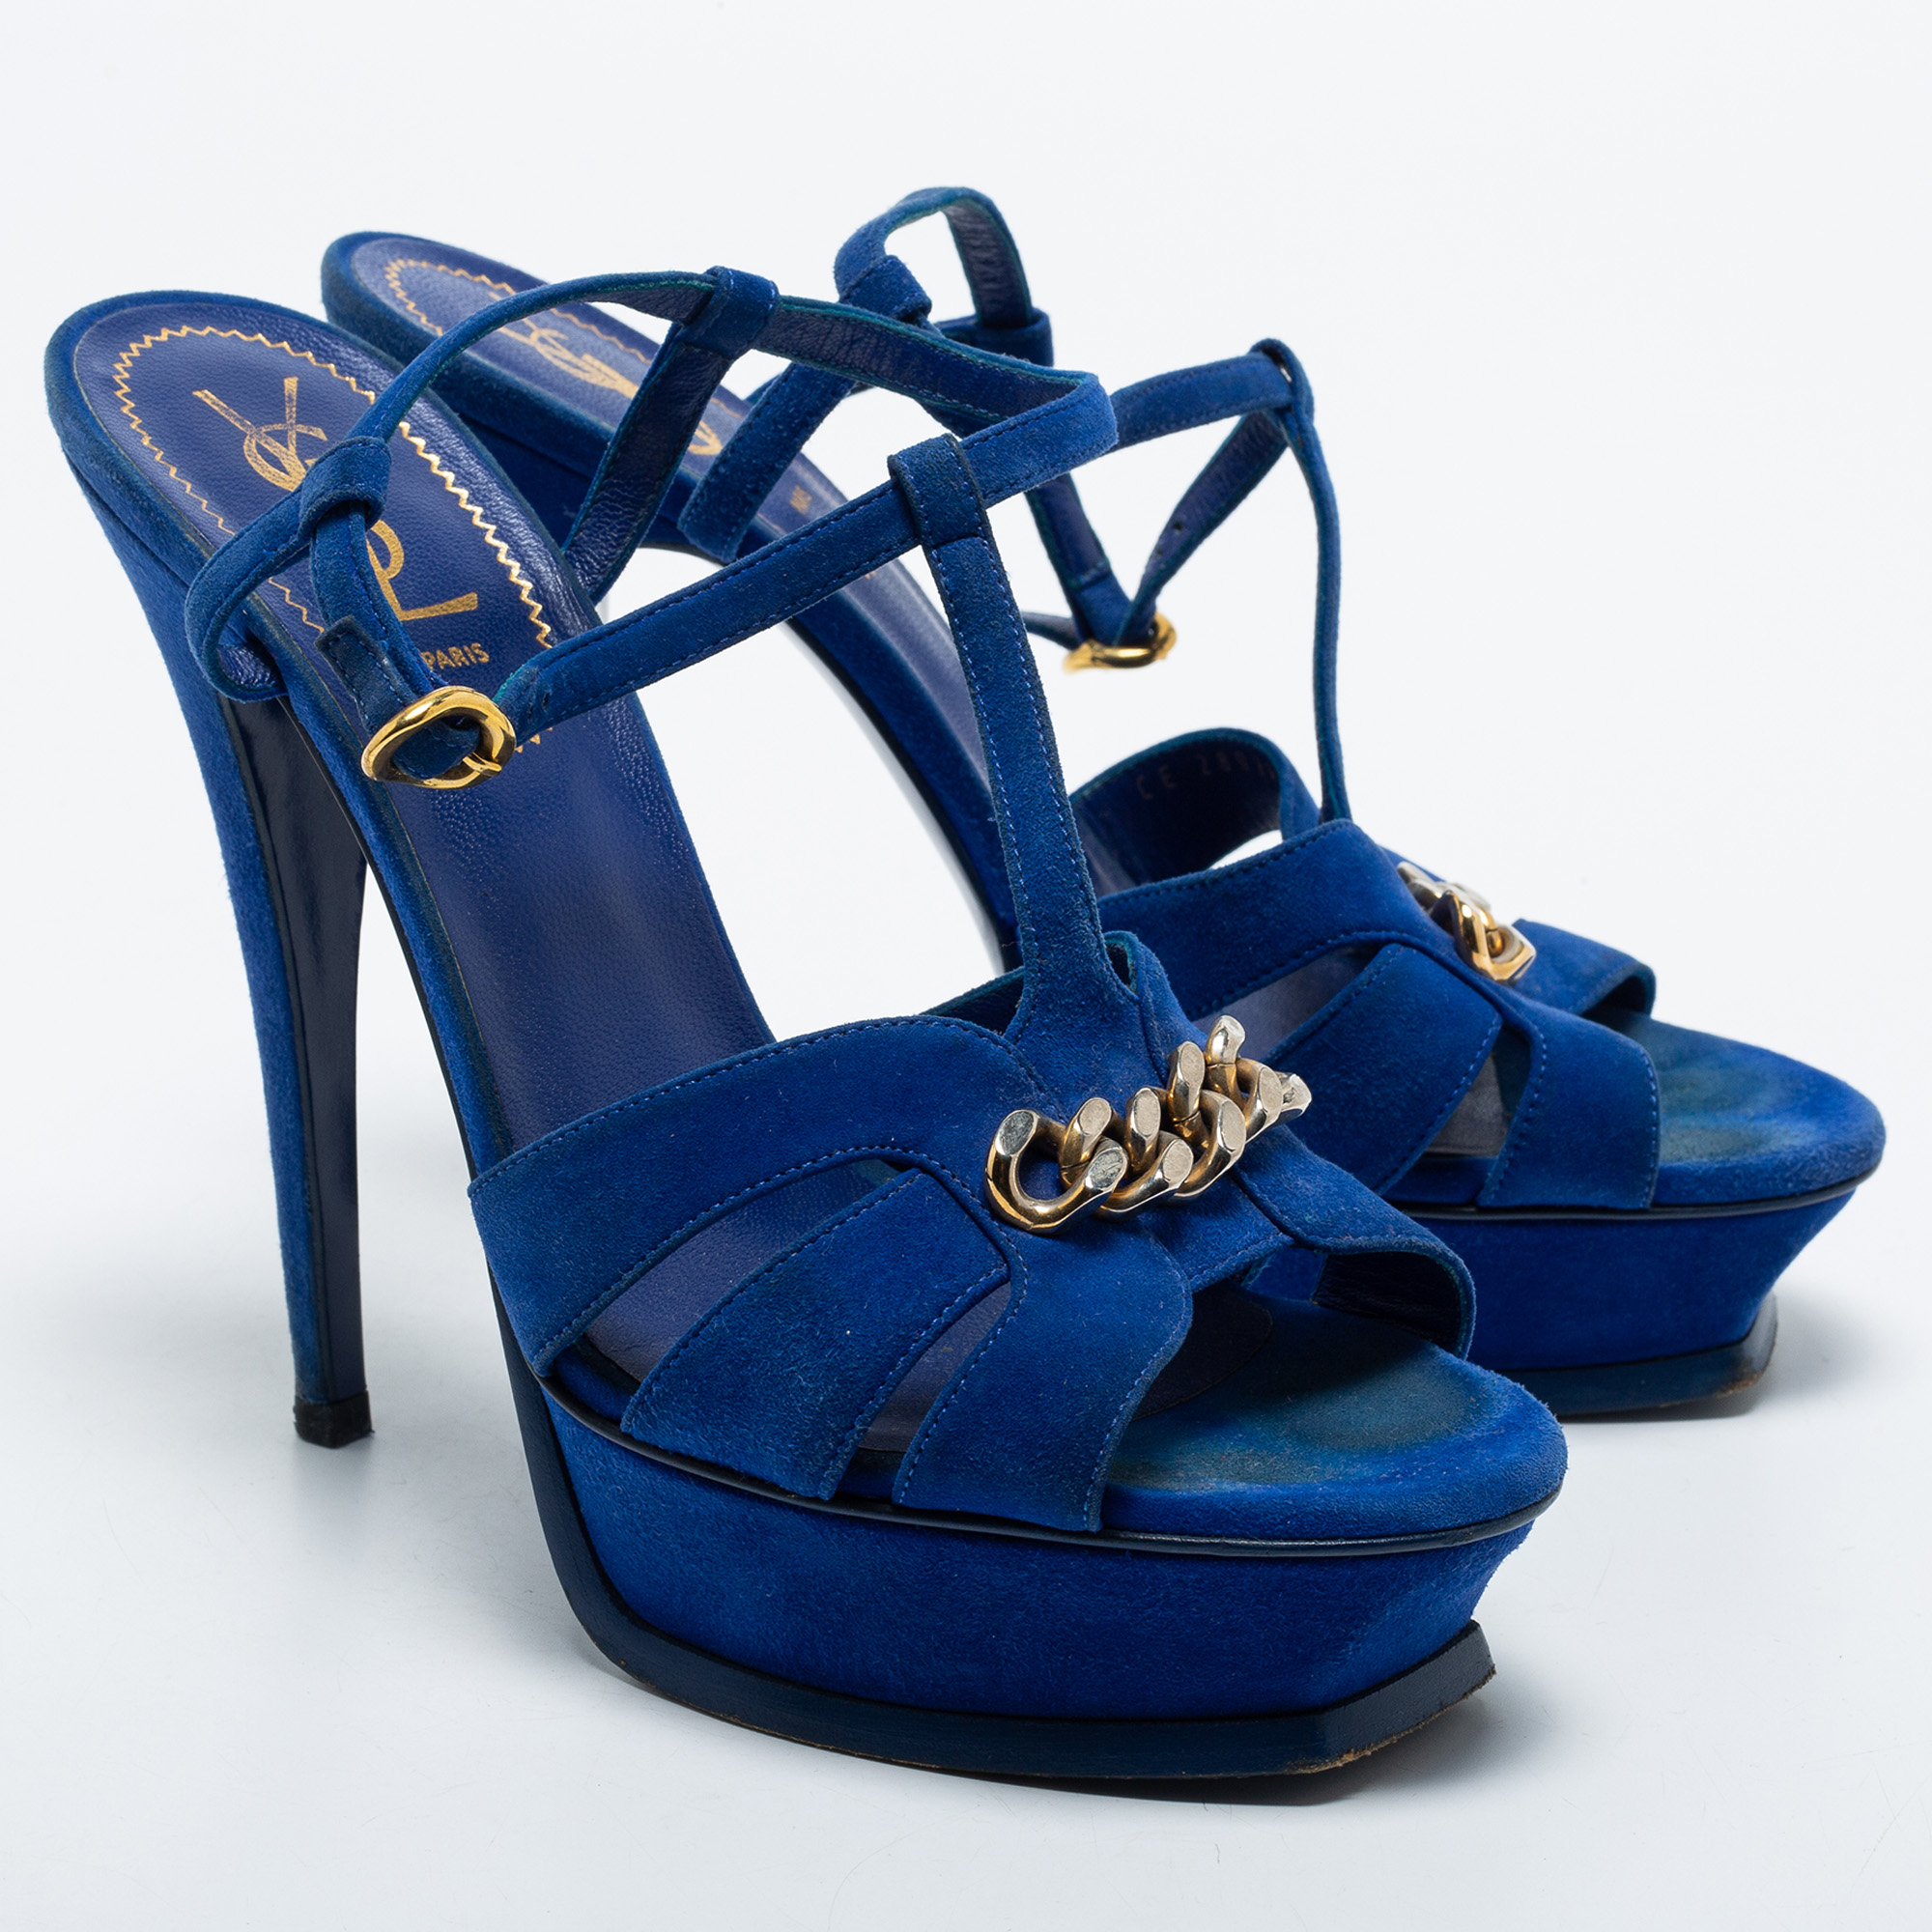 Yves Saint Laurent Navy Blue Suede Chain Detail Platform Sandals Size 39.5